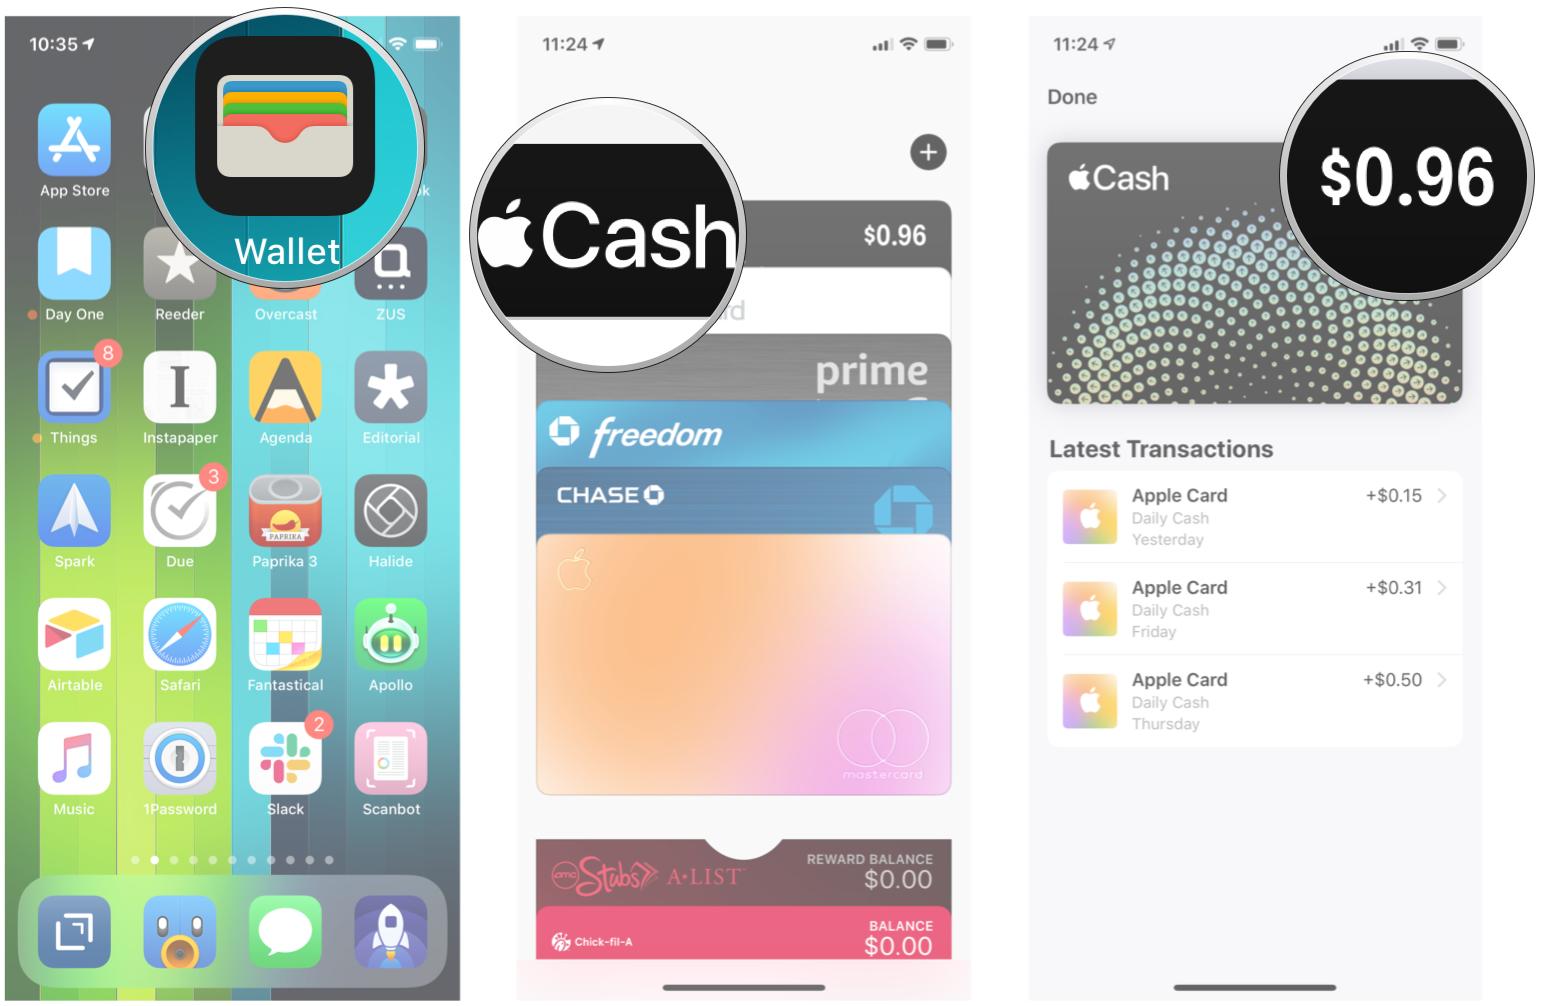 Open Wallet, tap Apple Cash Card, view your cash rewards